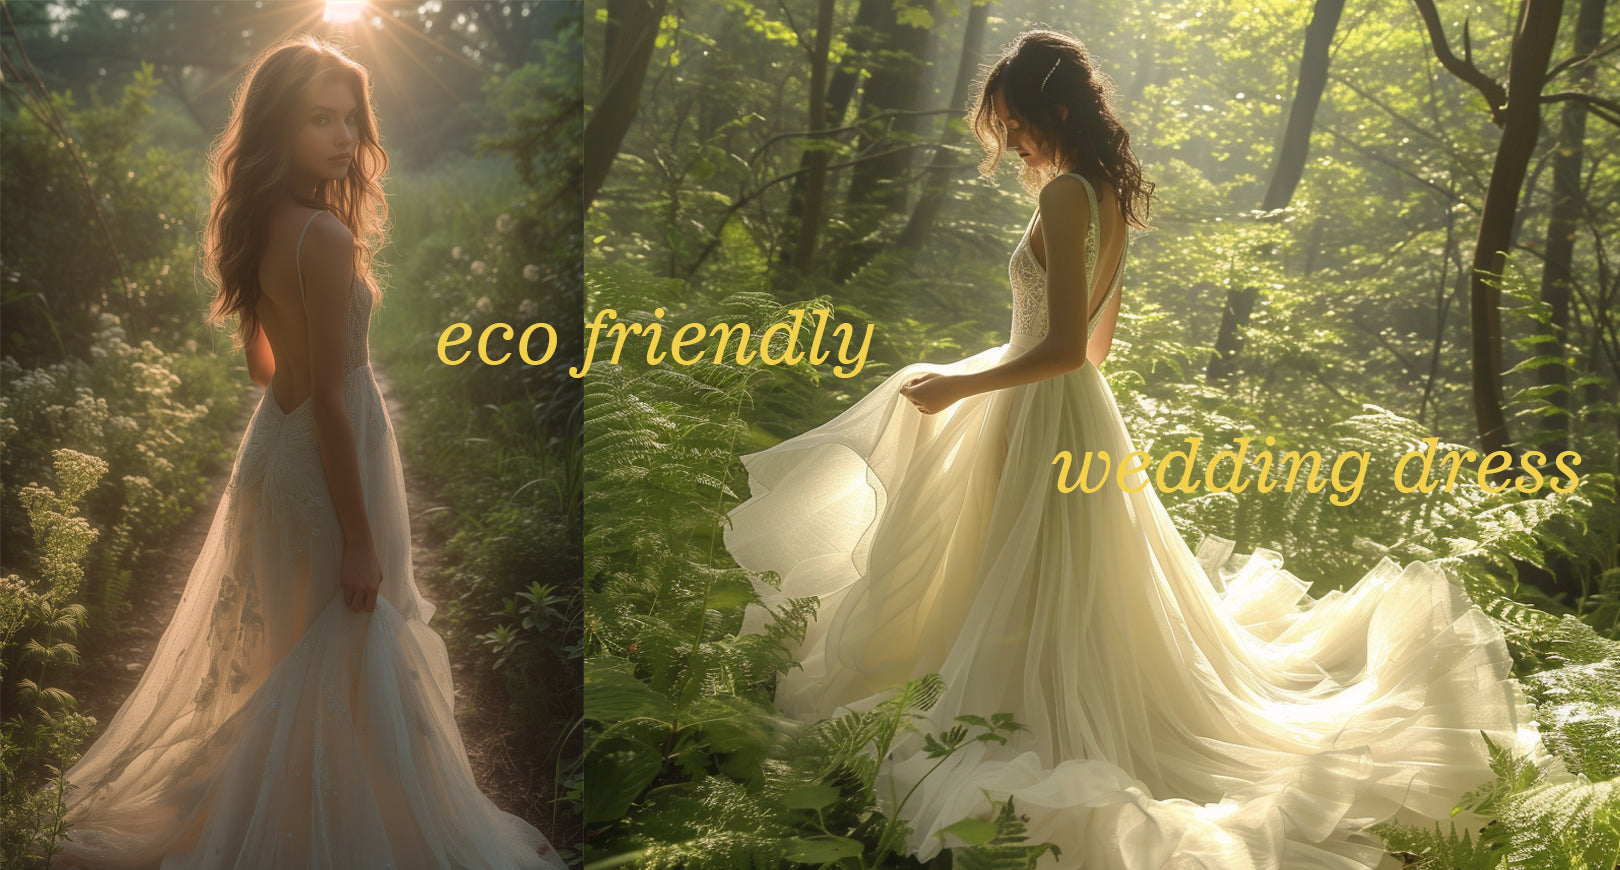 Eco friendly wedding dress